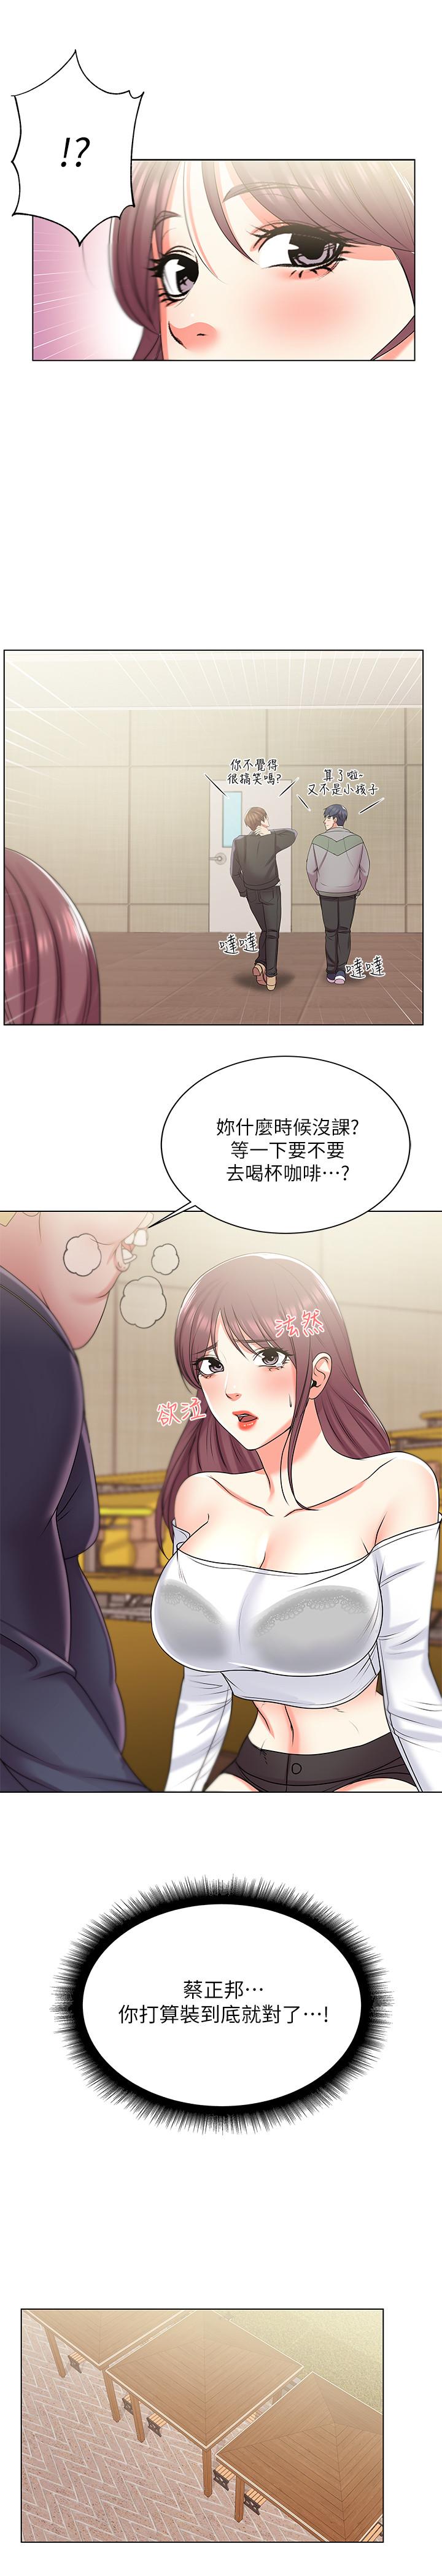 韩国污漫画 超市的漂亮姐姐 第13话-暧昧的全身按摩 21